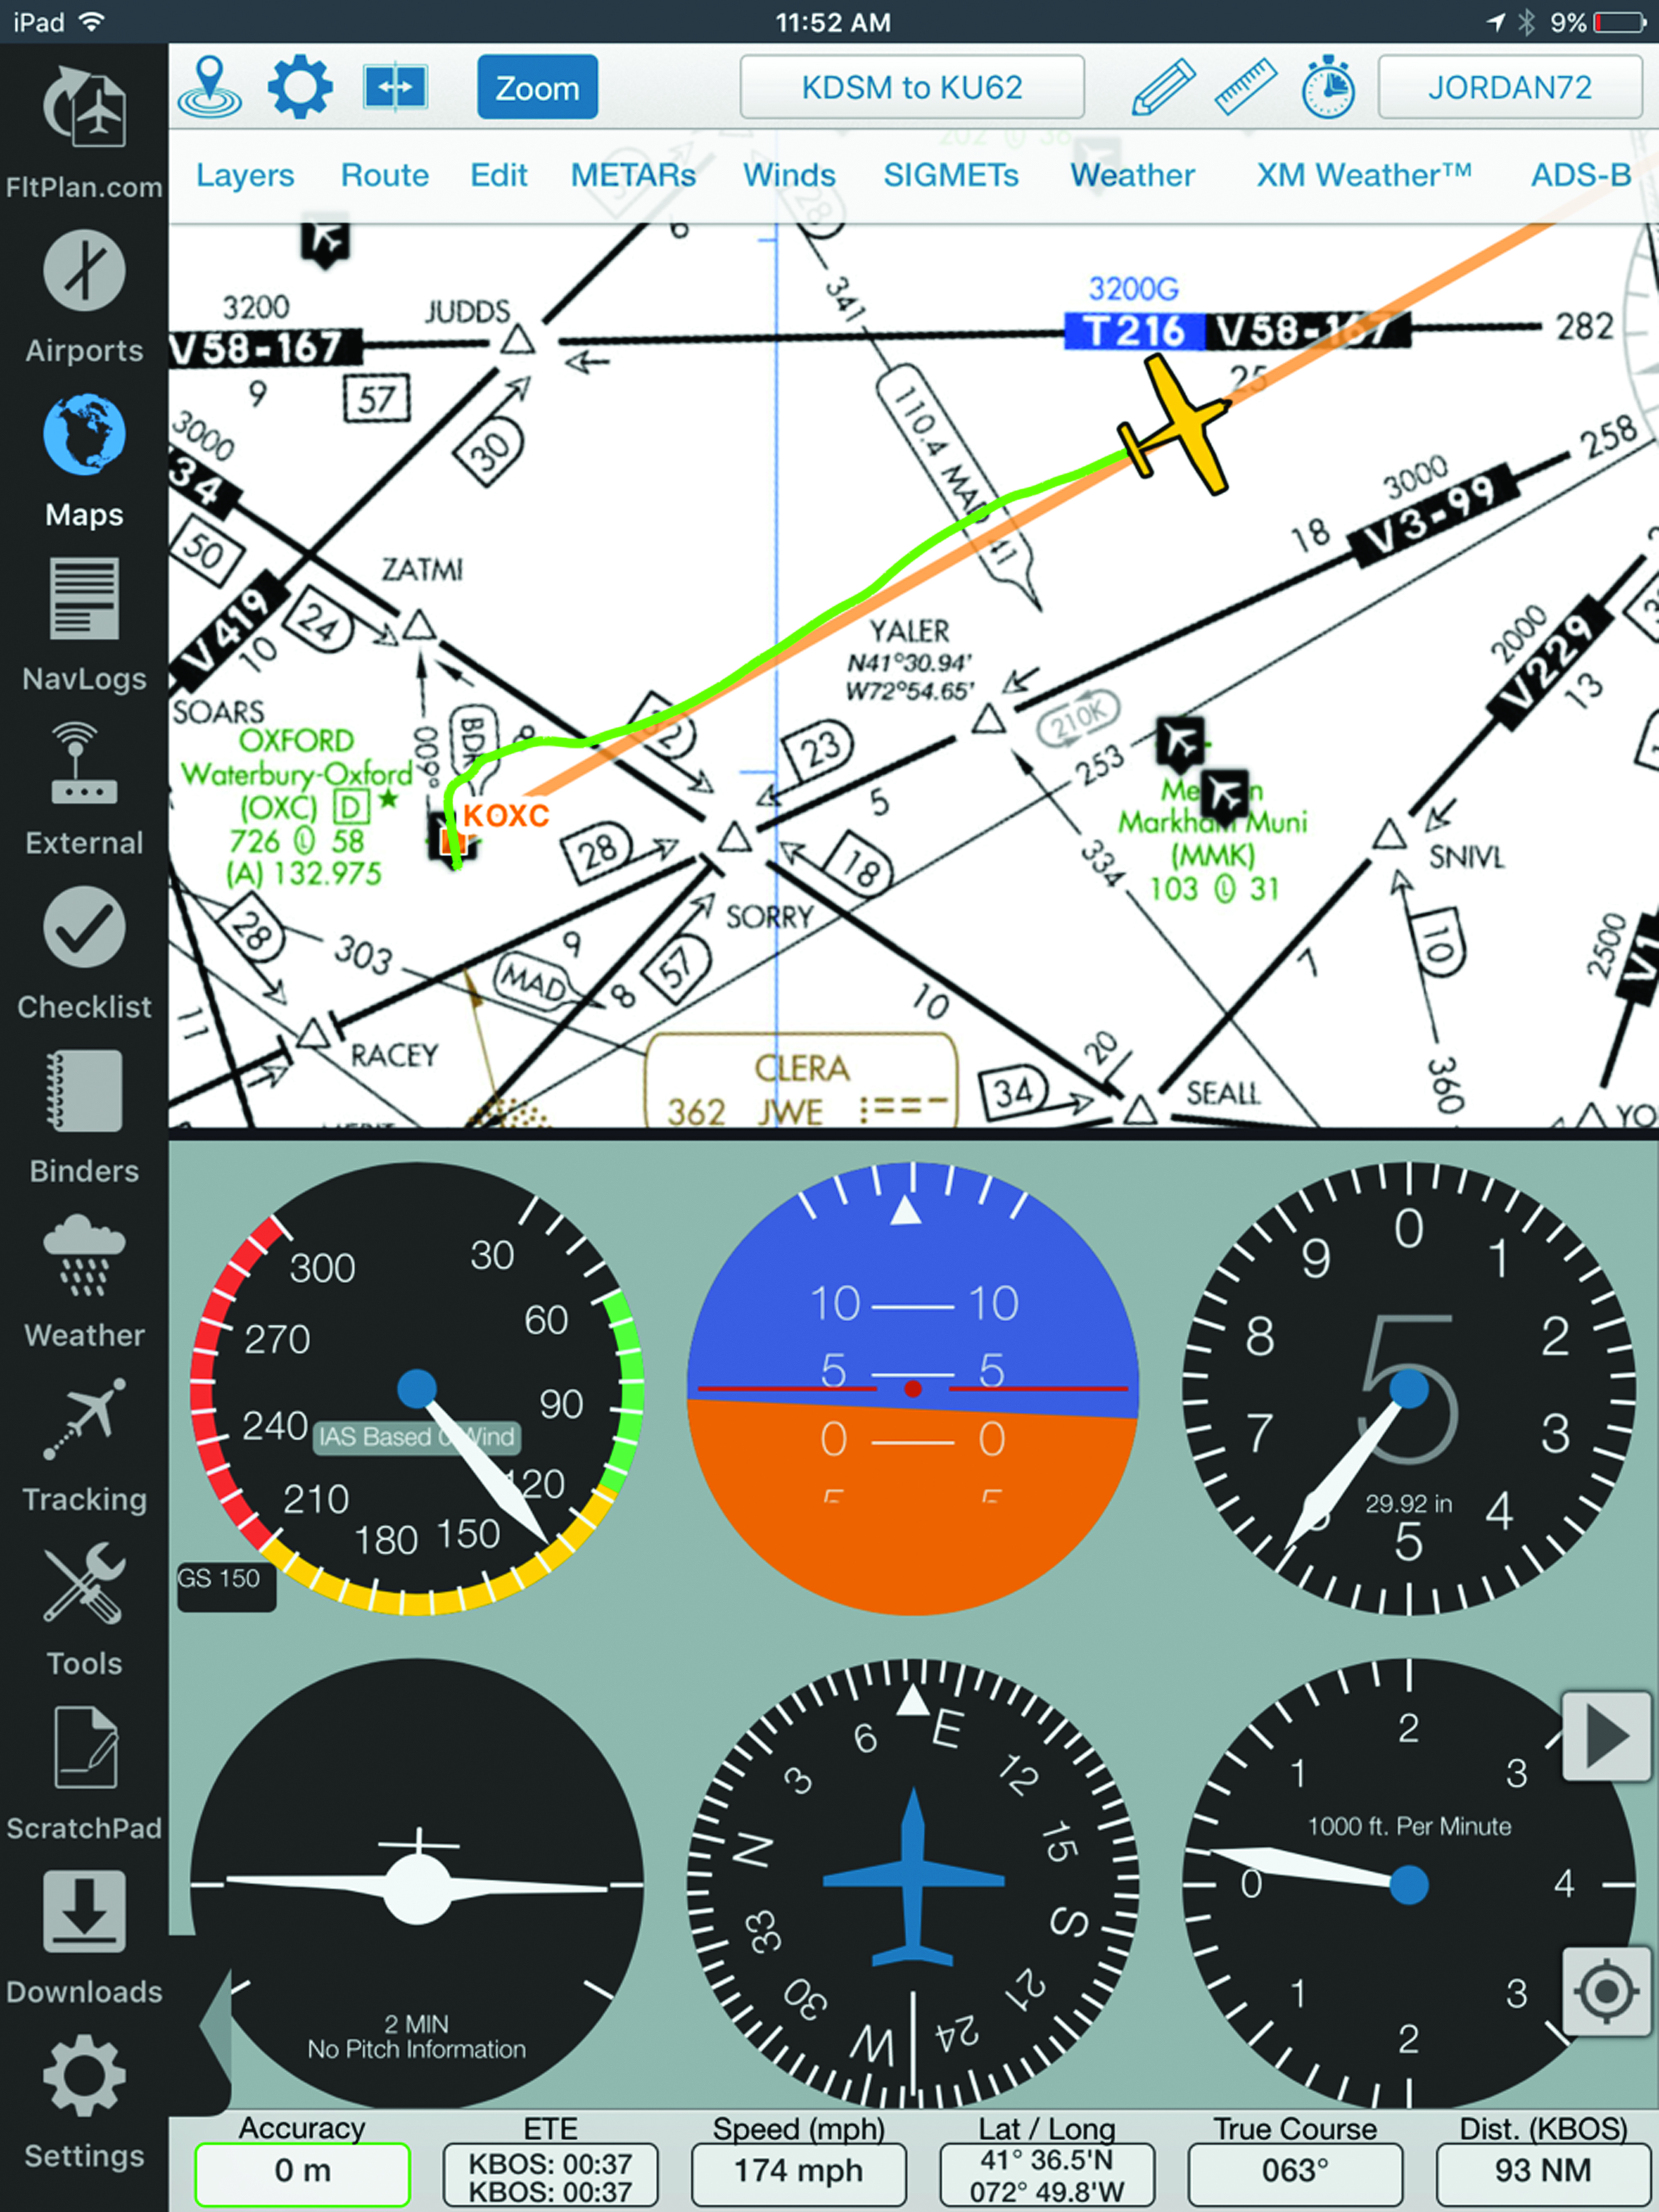 Flight Sim Charts Ipad